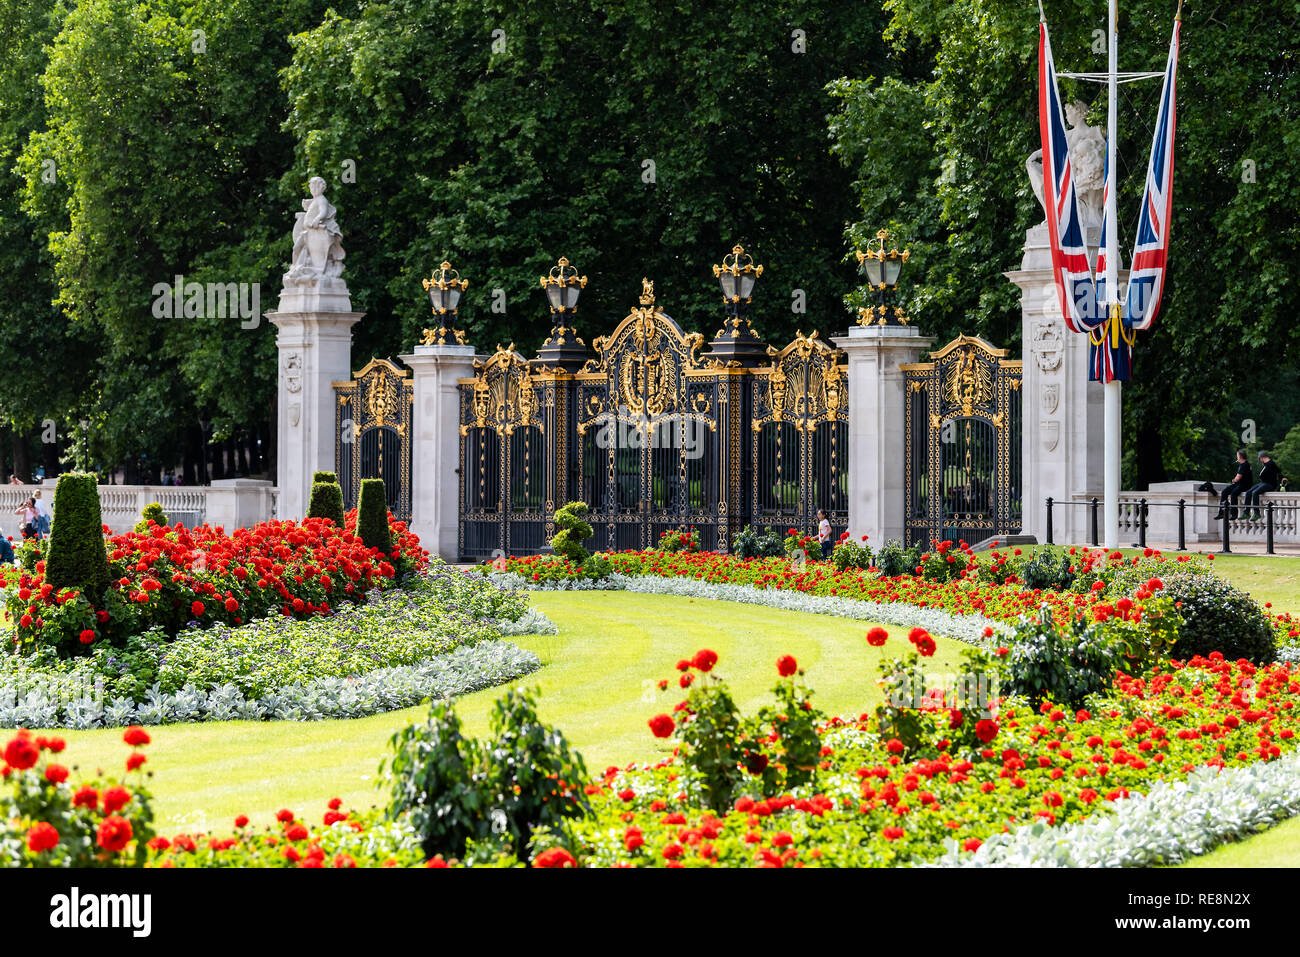 Londres, Royaume-Uni - 21 juin 2018 : le palais de Buckingham clôture barrière drapeaux et de l'architecture au cours de l'été journée avec rose rouge fleur jardin paysagé Banque D'Images